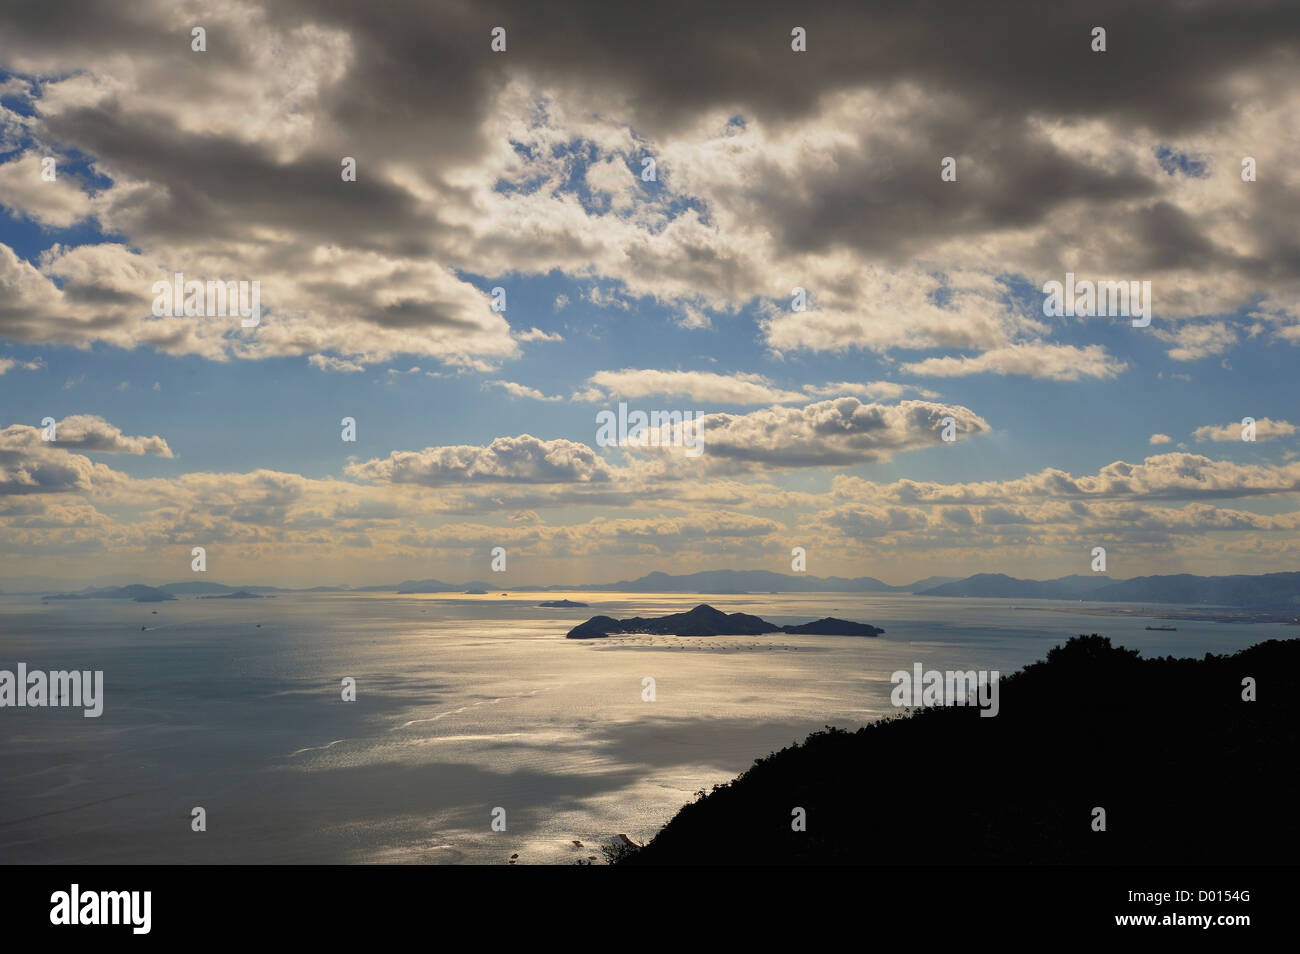 Seto Inland Sea from the summit of Mt Misen on the island of Miyajima, Japan Stock Photo